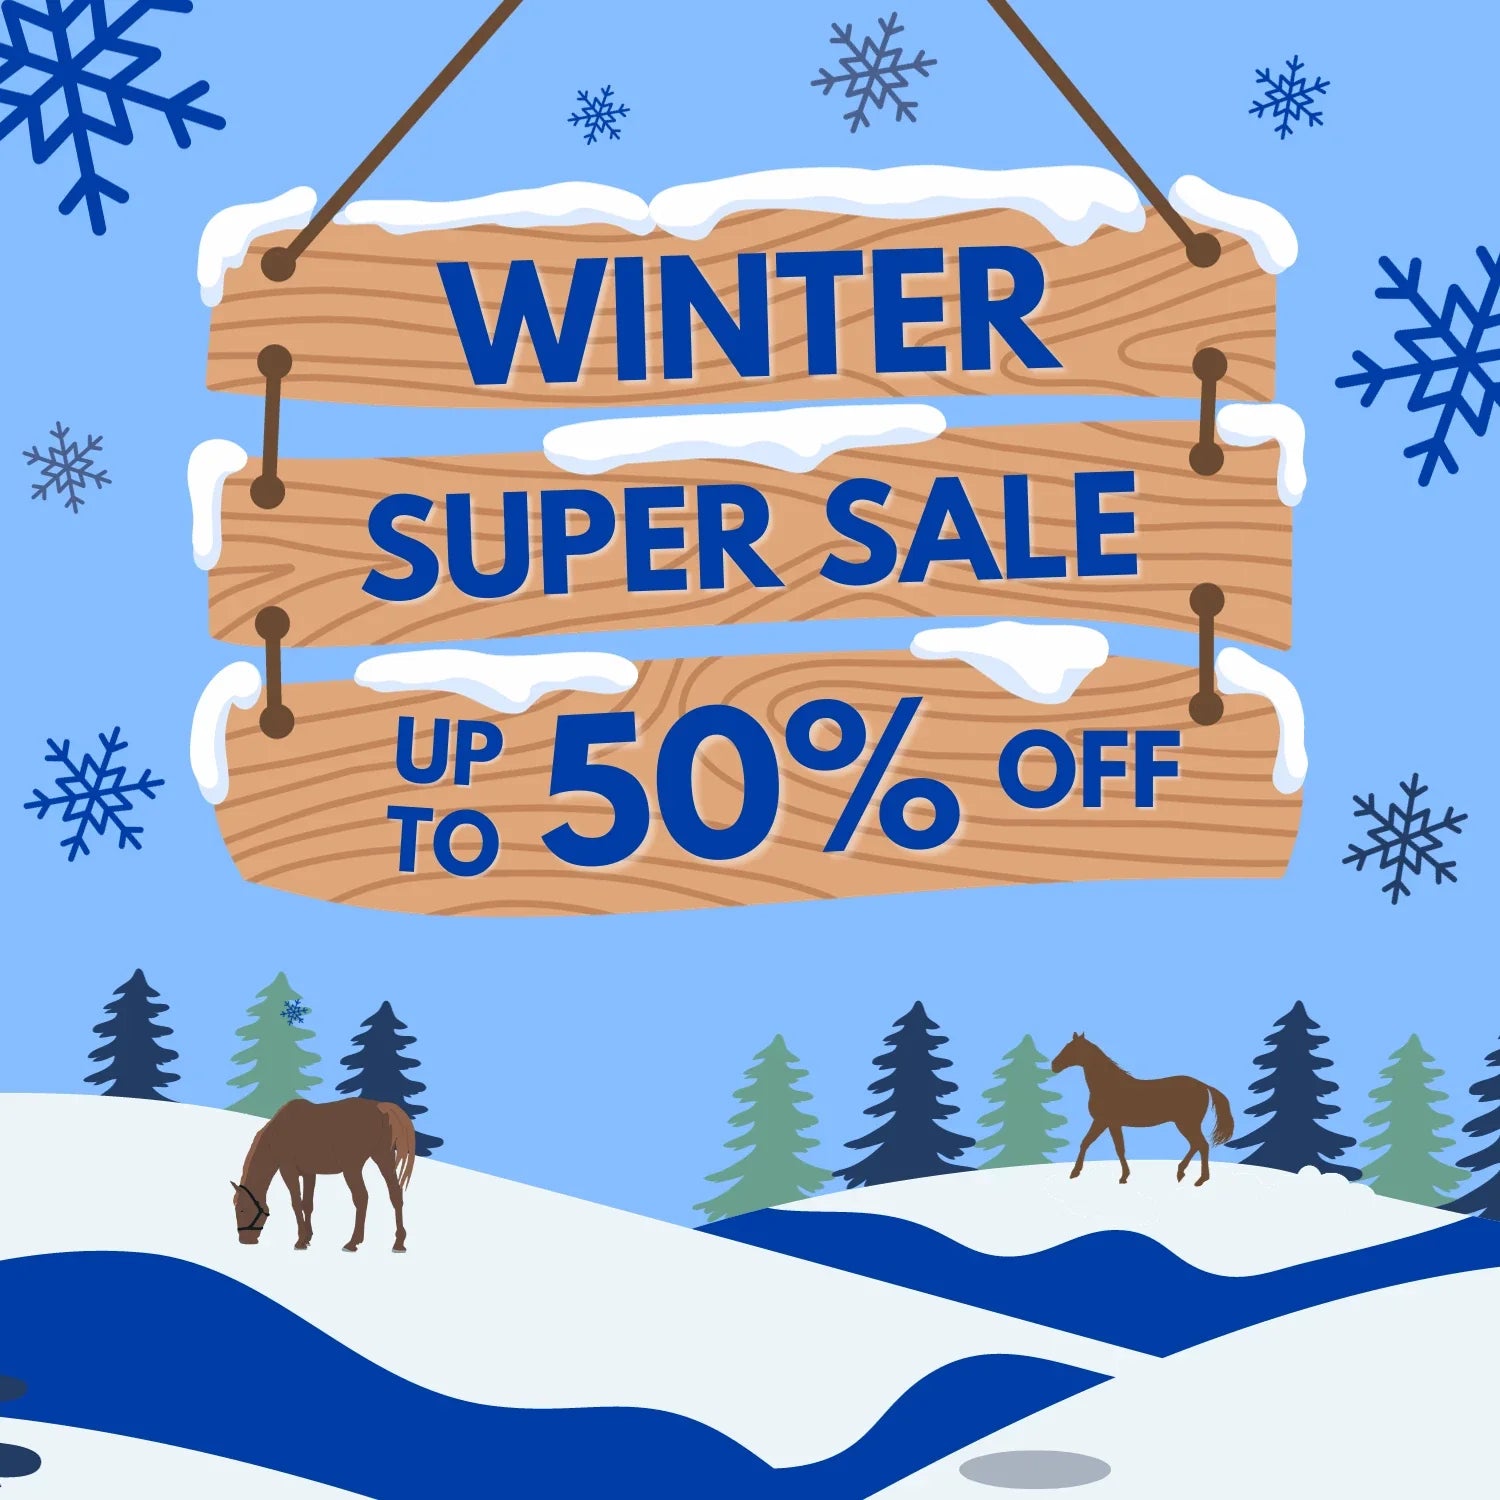 Winter Super Sale